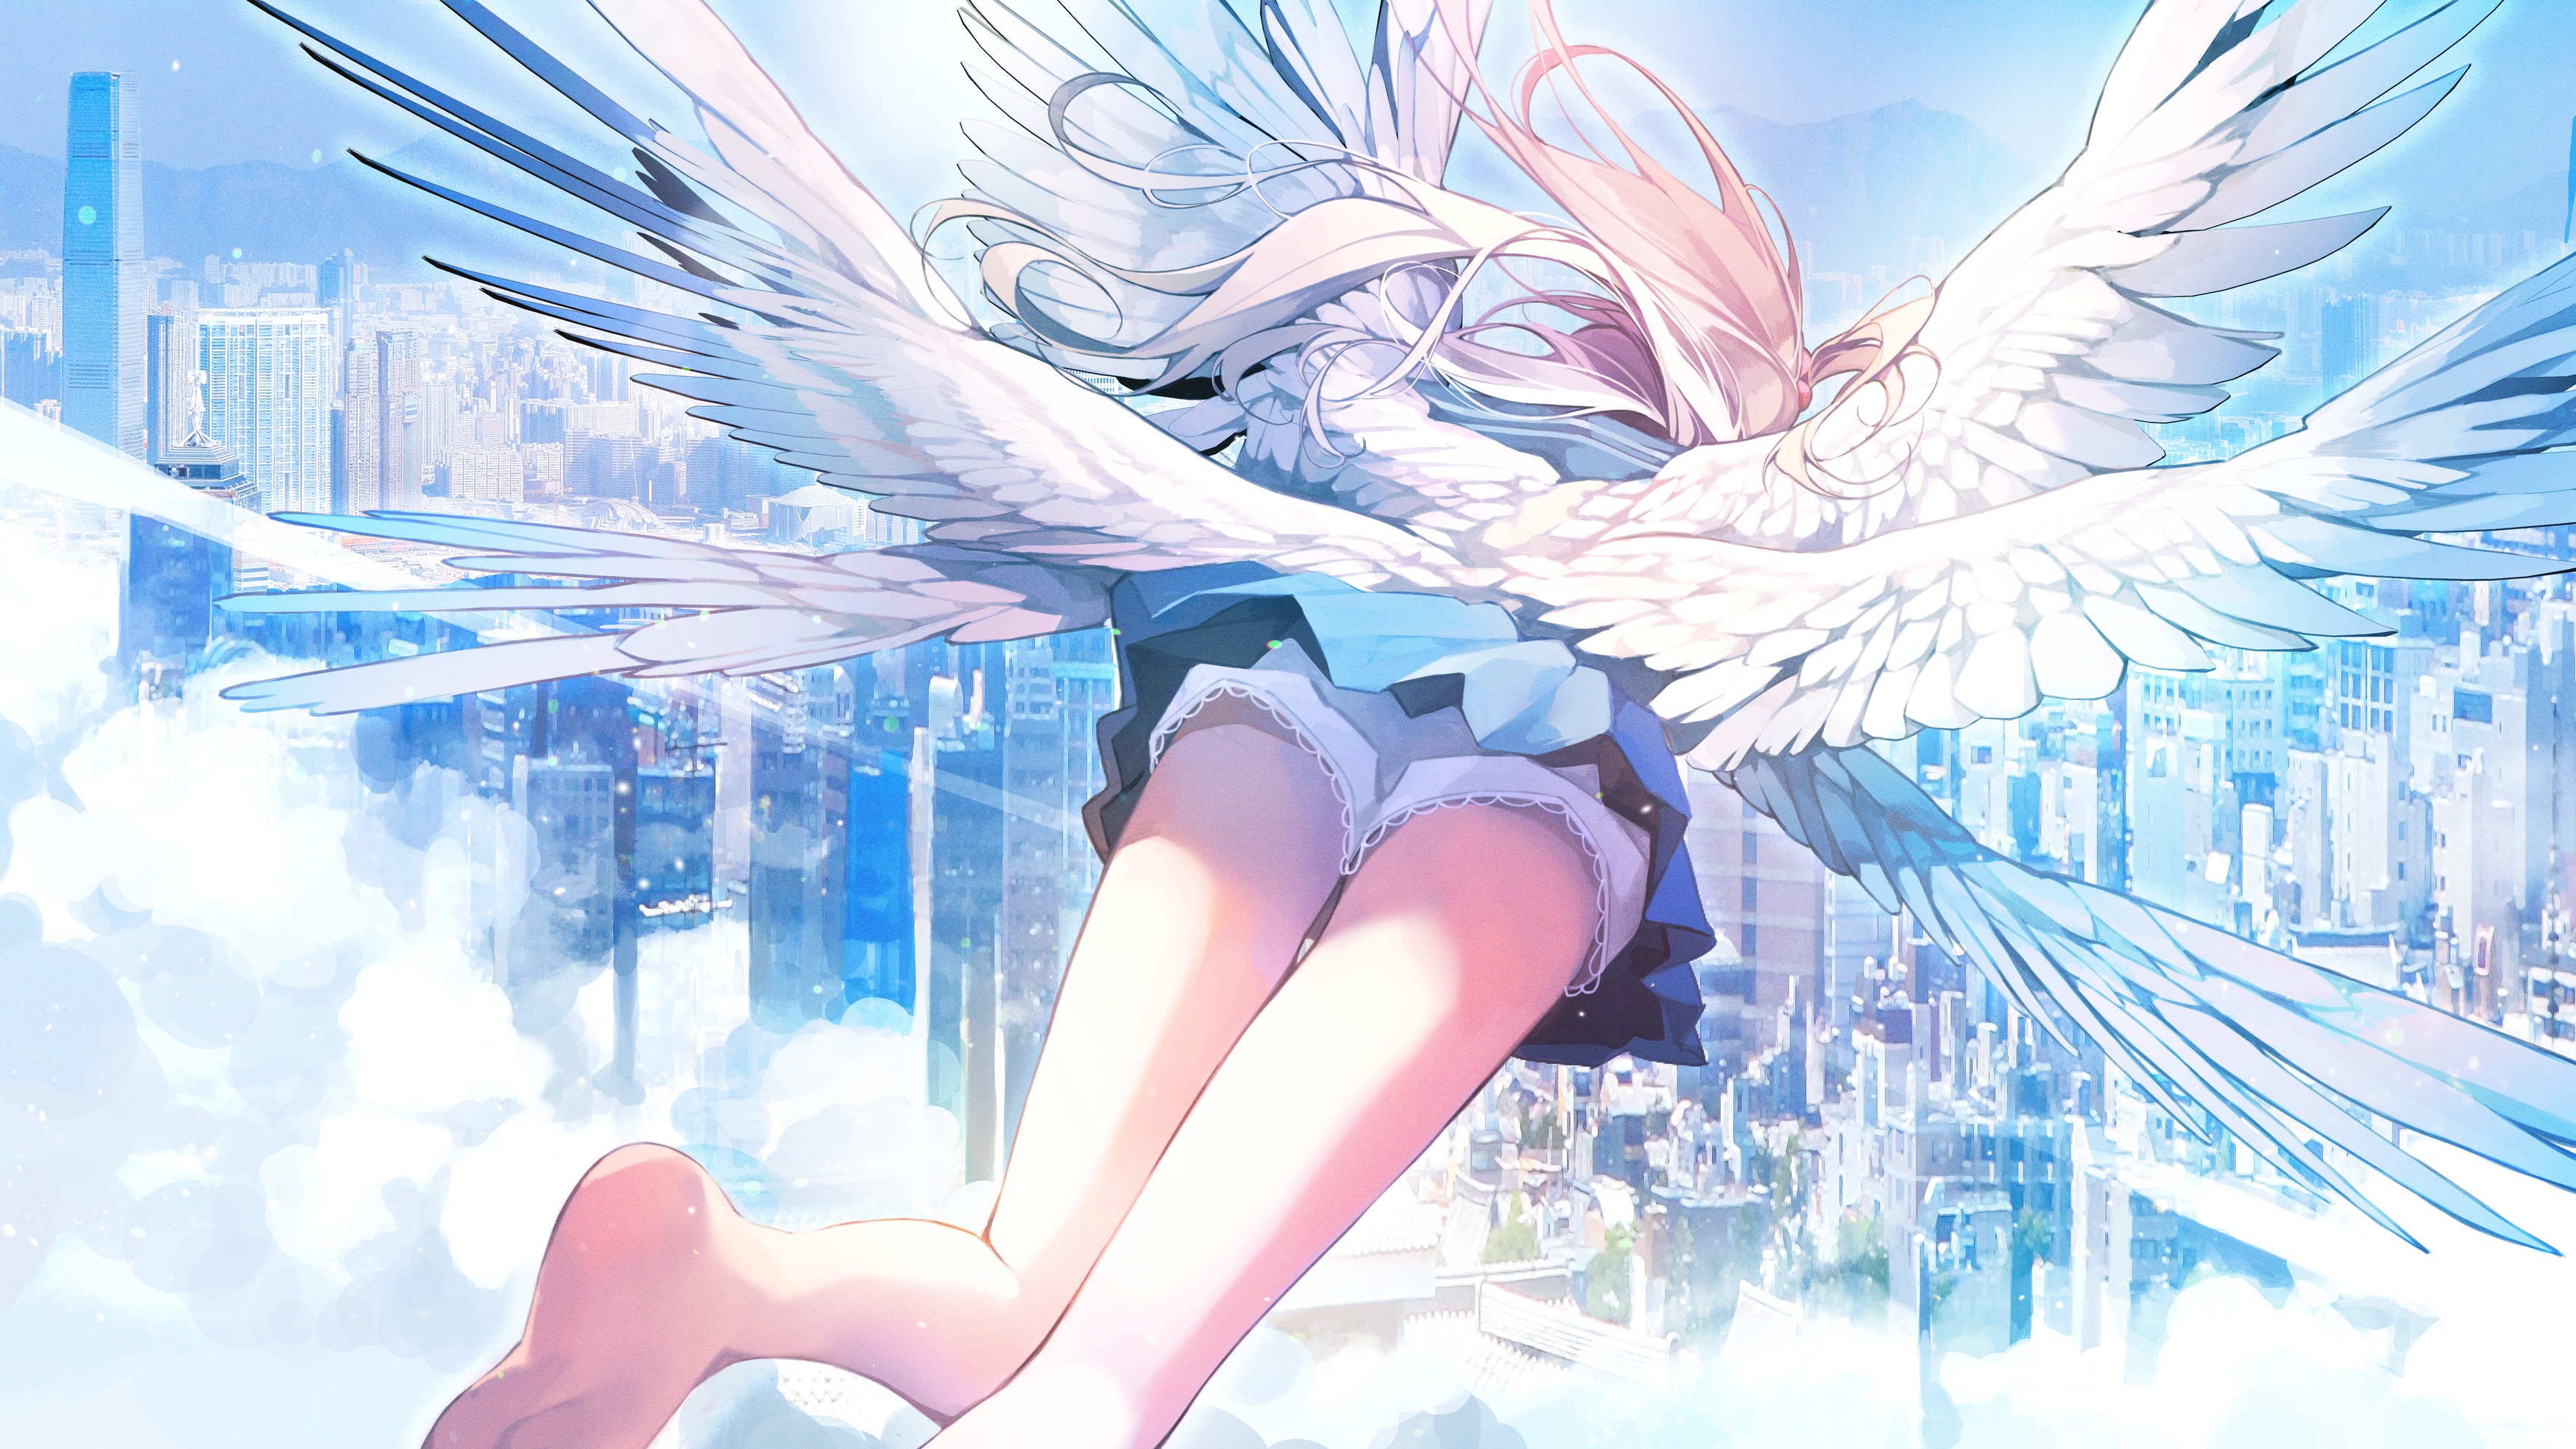 Anime 3500x1969 anime anime girls thighs legs wings flying angel cityscape fantasy art fantasy girl